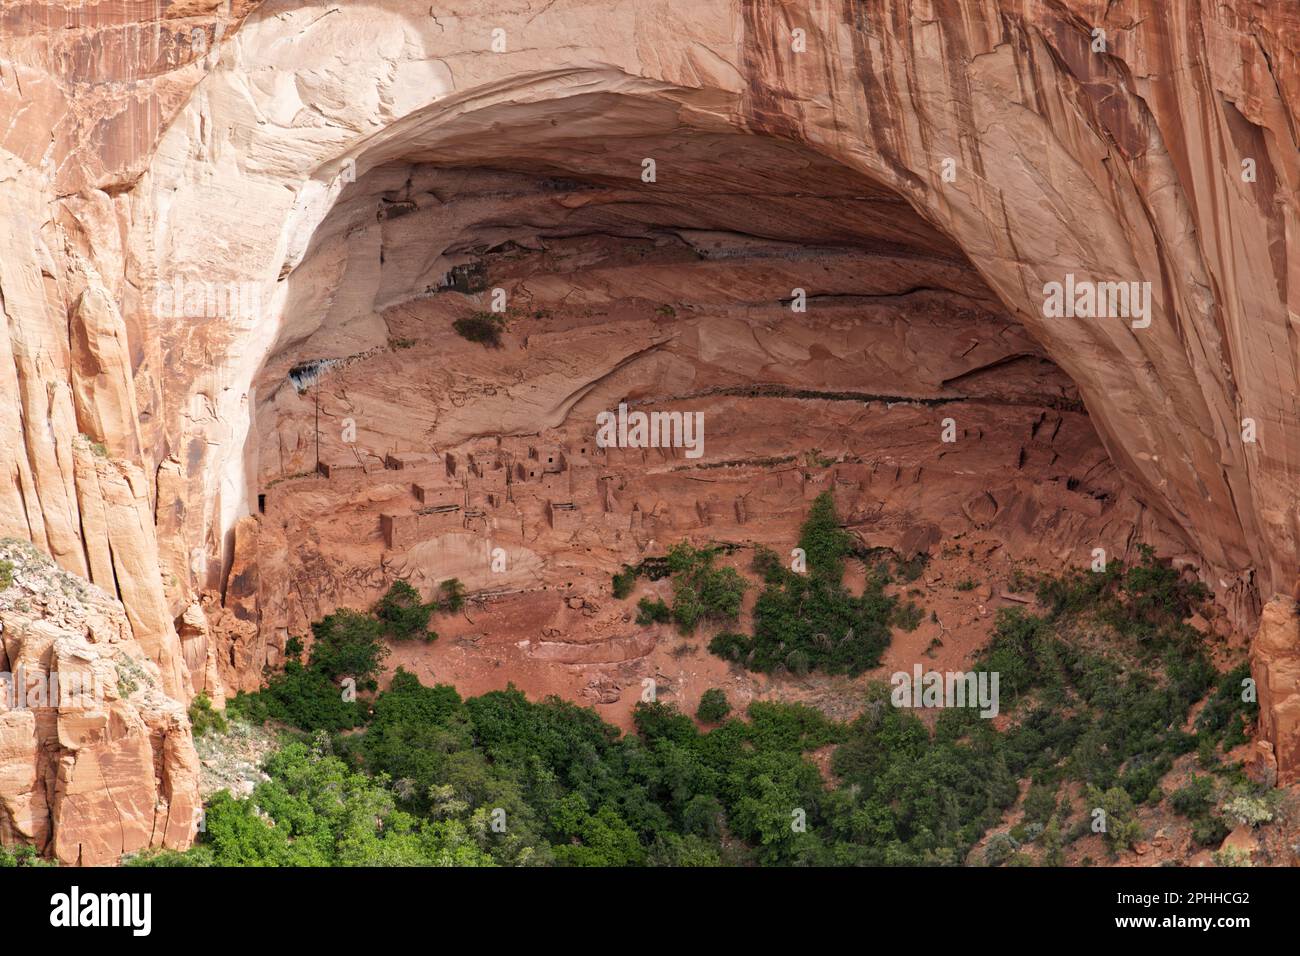 Blick auf die Klippensiedlung Betatakin (bedeutet „Haus auf dem Vorsprung“), die sich unter einer großen Felsenhalle in der Navajo Nation im Norden Arizonas, USA, befindet Stockfoto